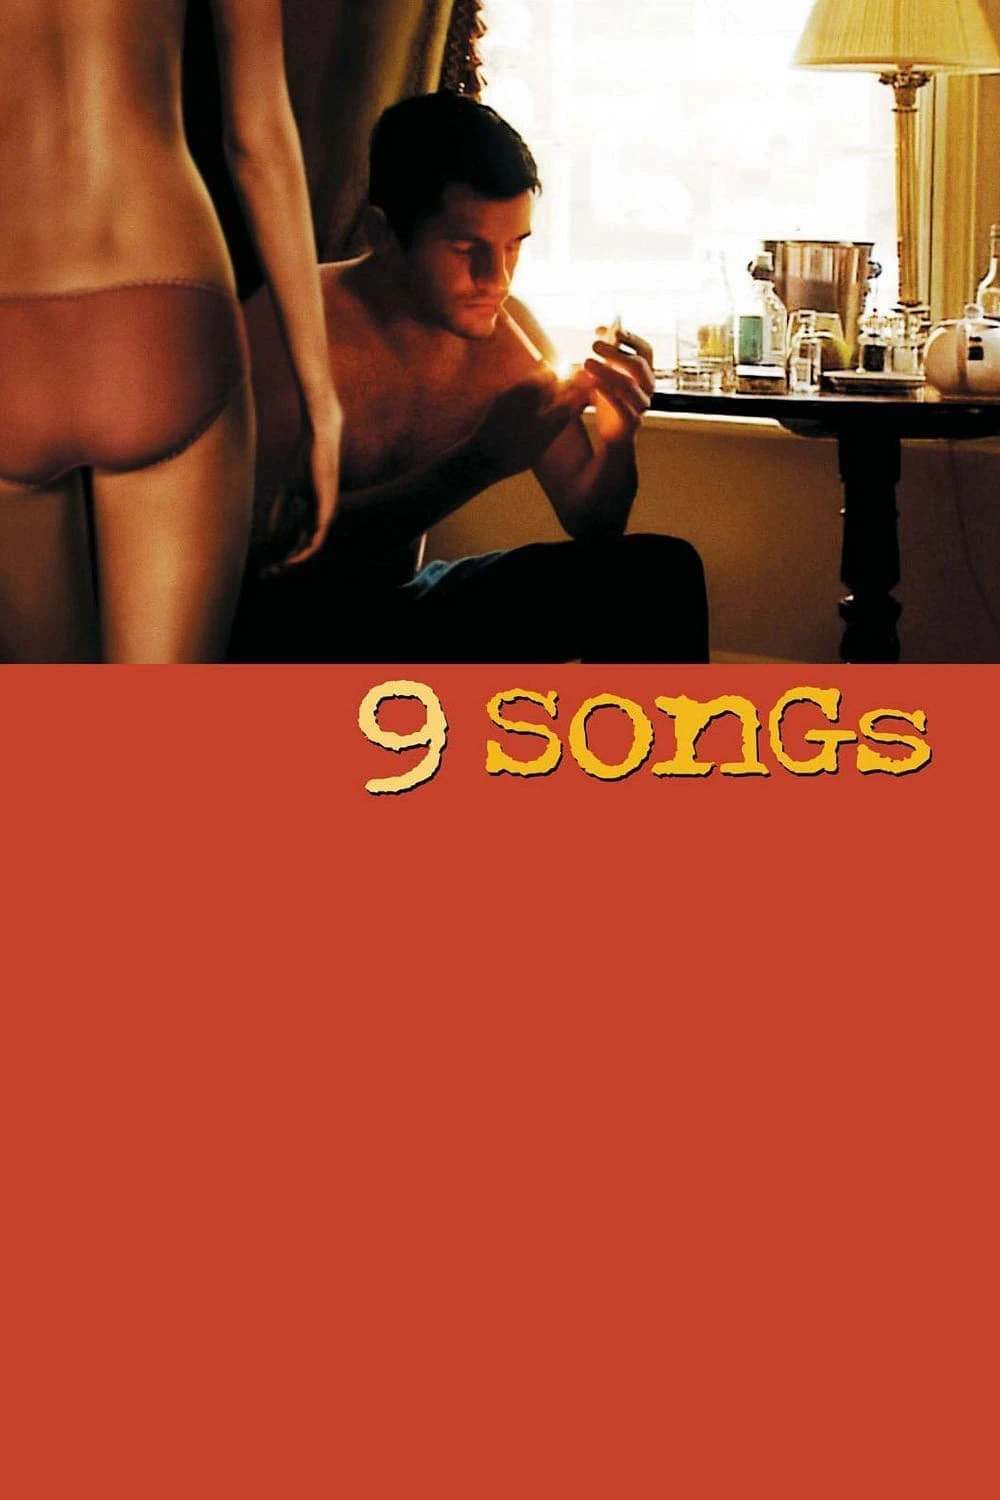 Giai Điệu Dục Cảm | 9 Songs (2004)